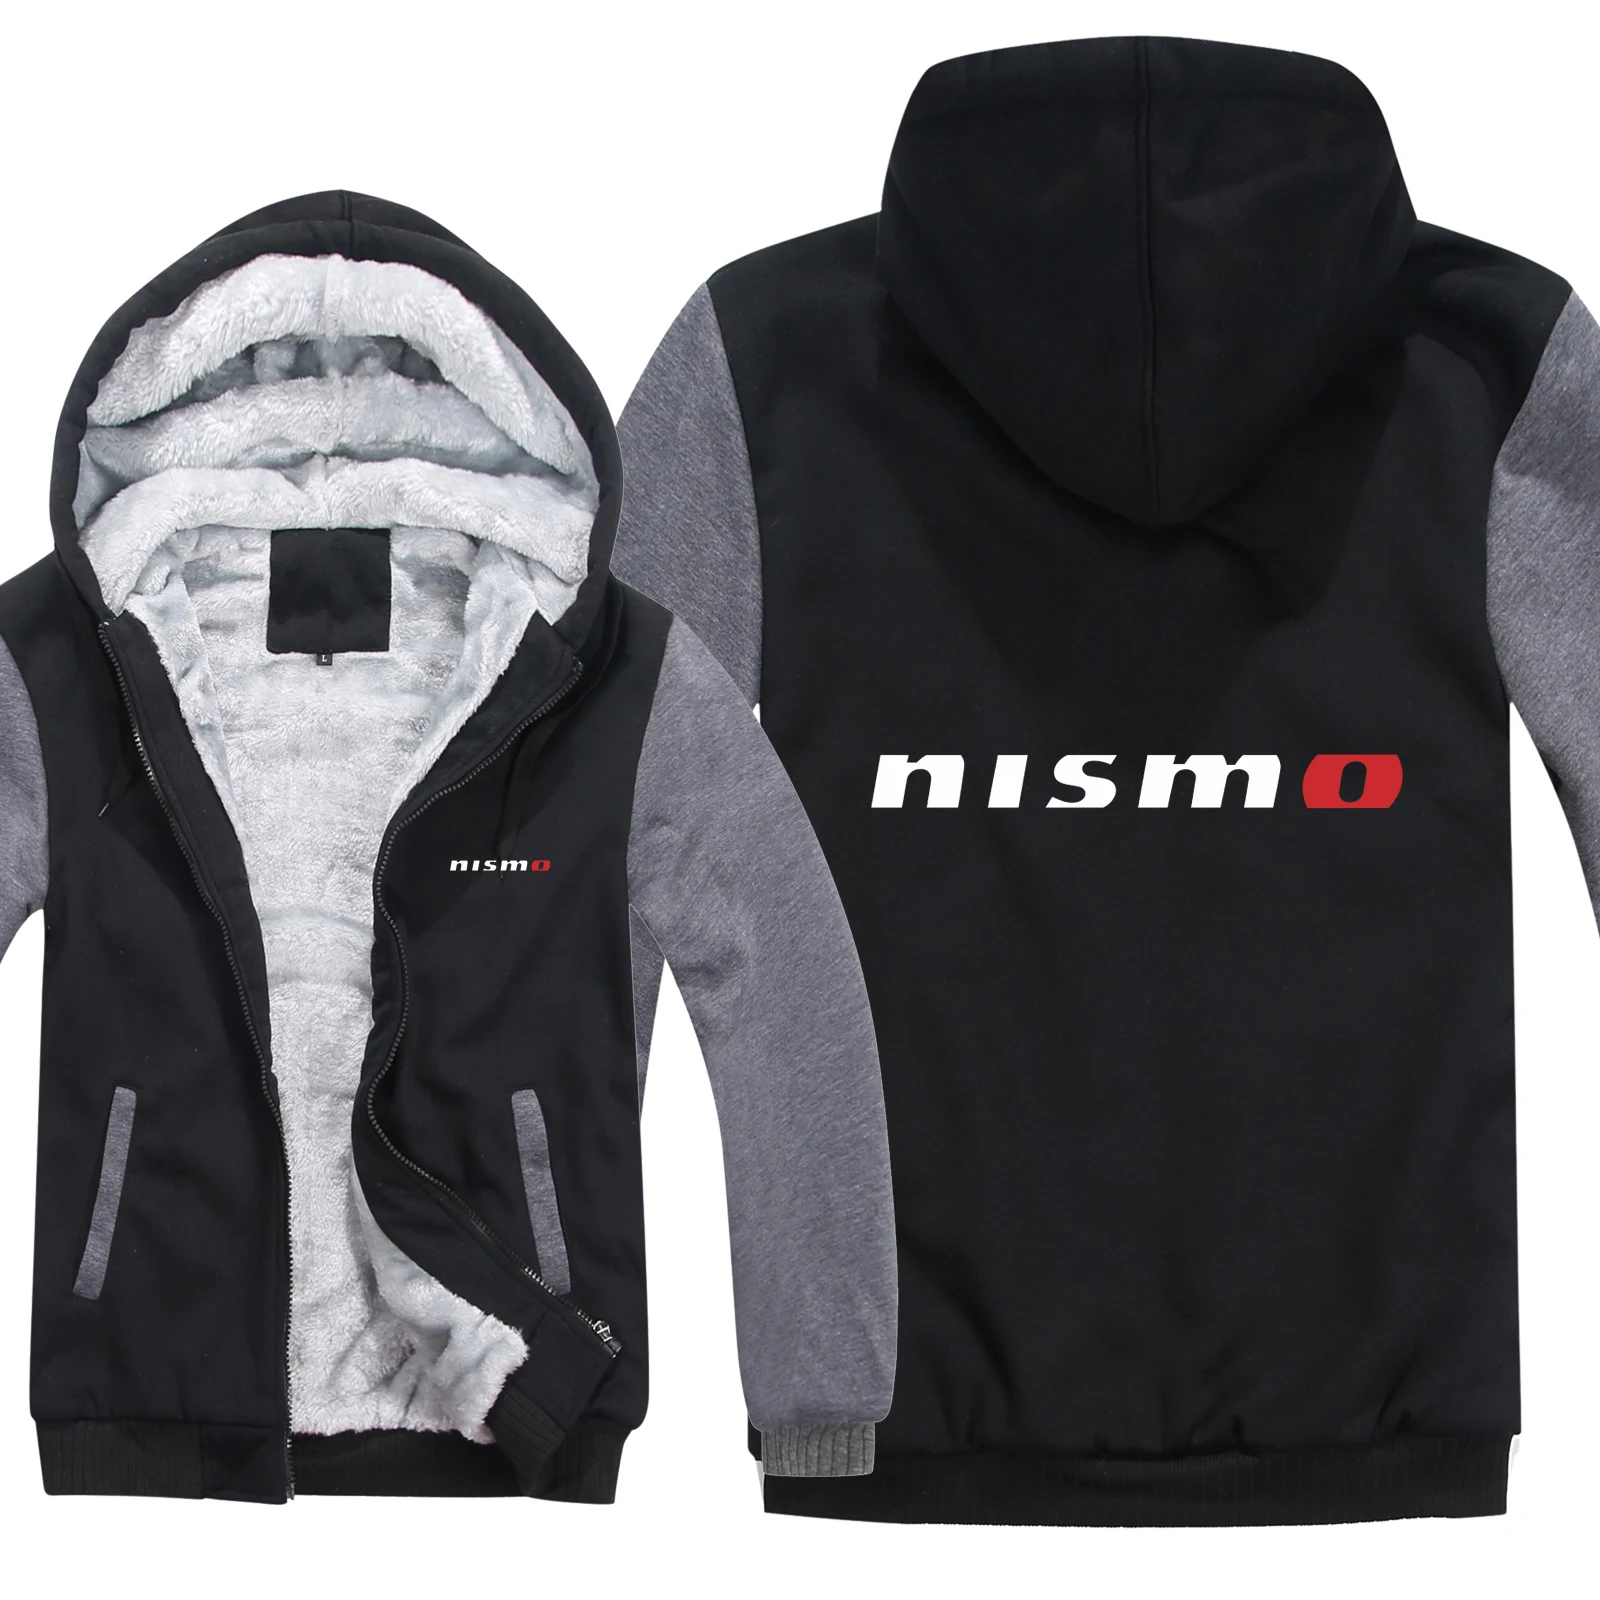 Nismo толстовки для мужчин модная шерстяная куртка с подкладкой Nismo внедорожные толстовки мужские пальто пуловер